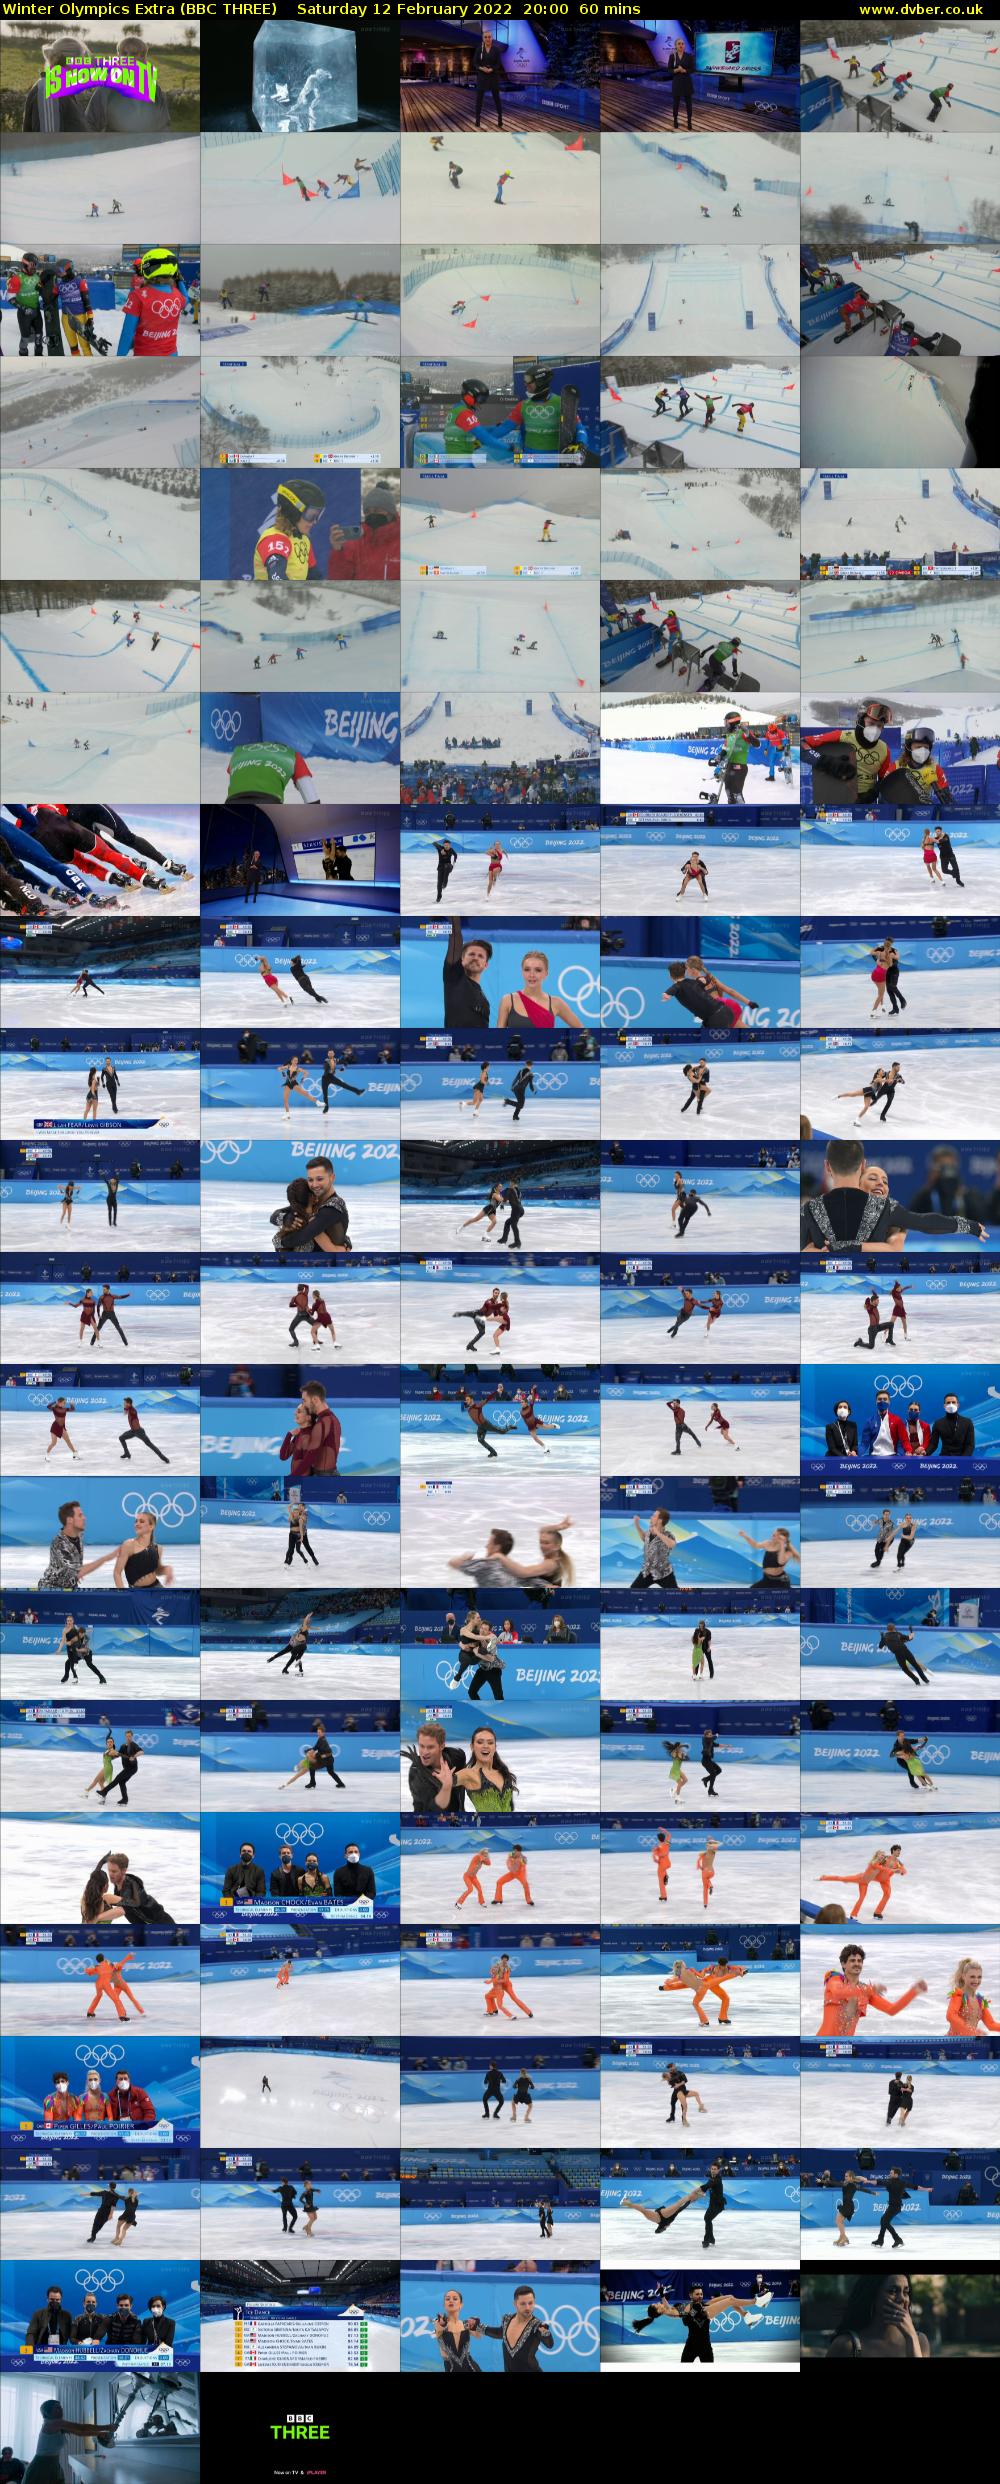 Winter Olympics Extra (BBC THREE) Saturday 12 February 2022 20:00 - 21:00